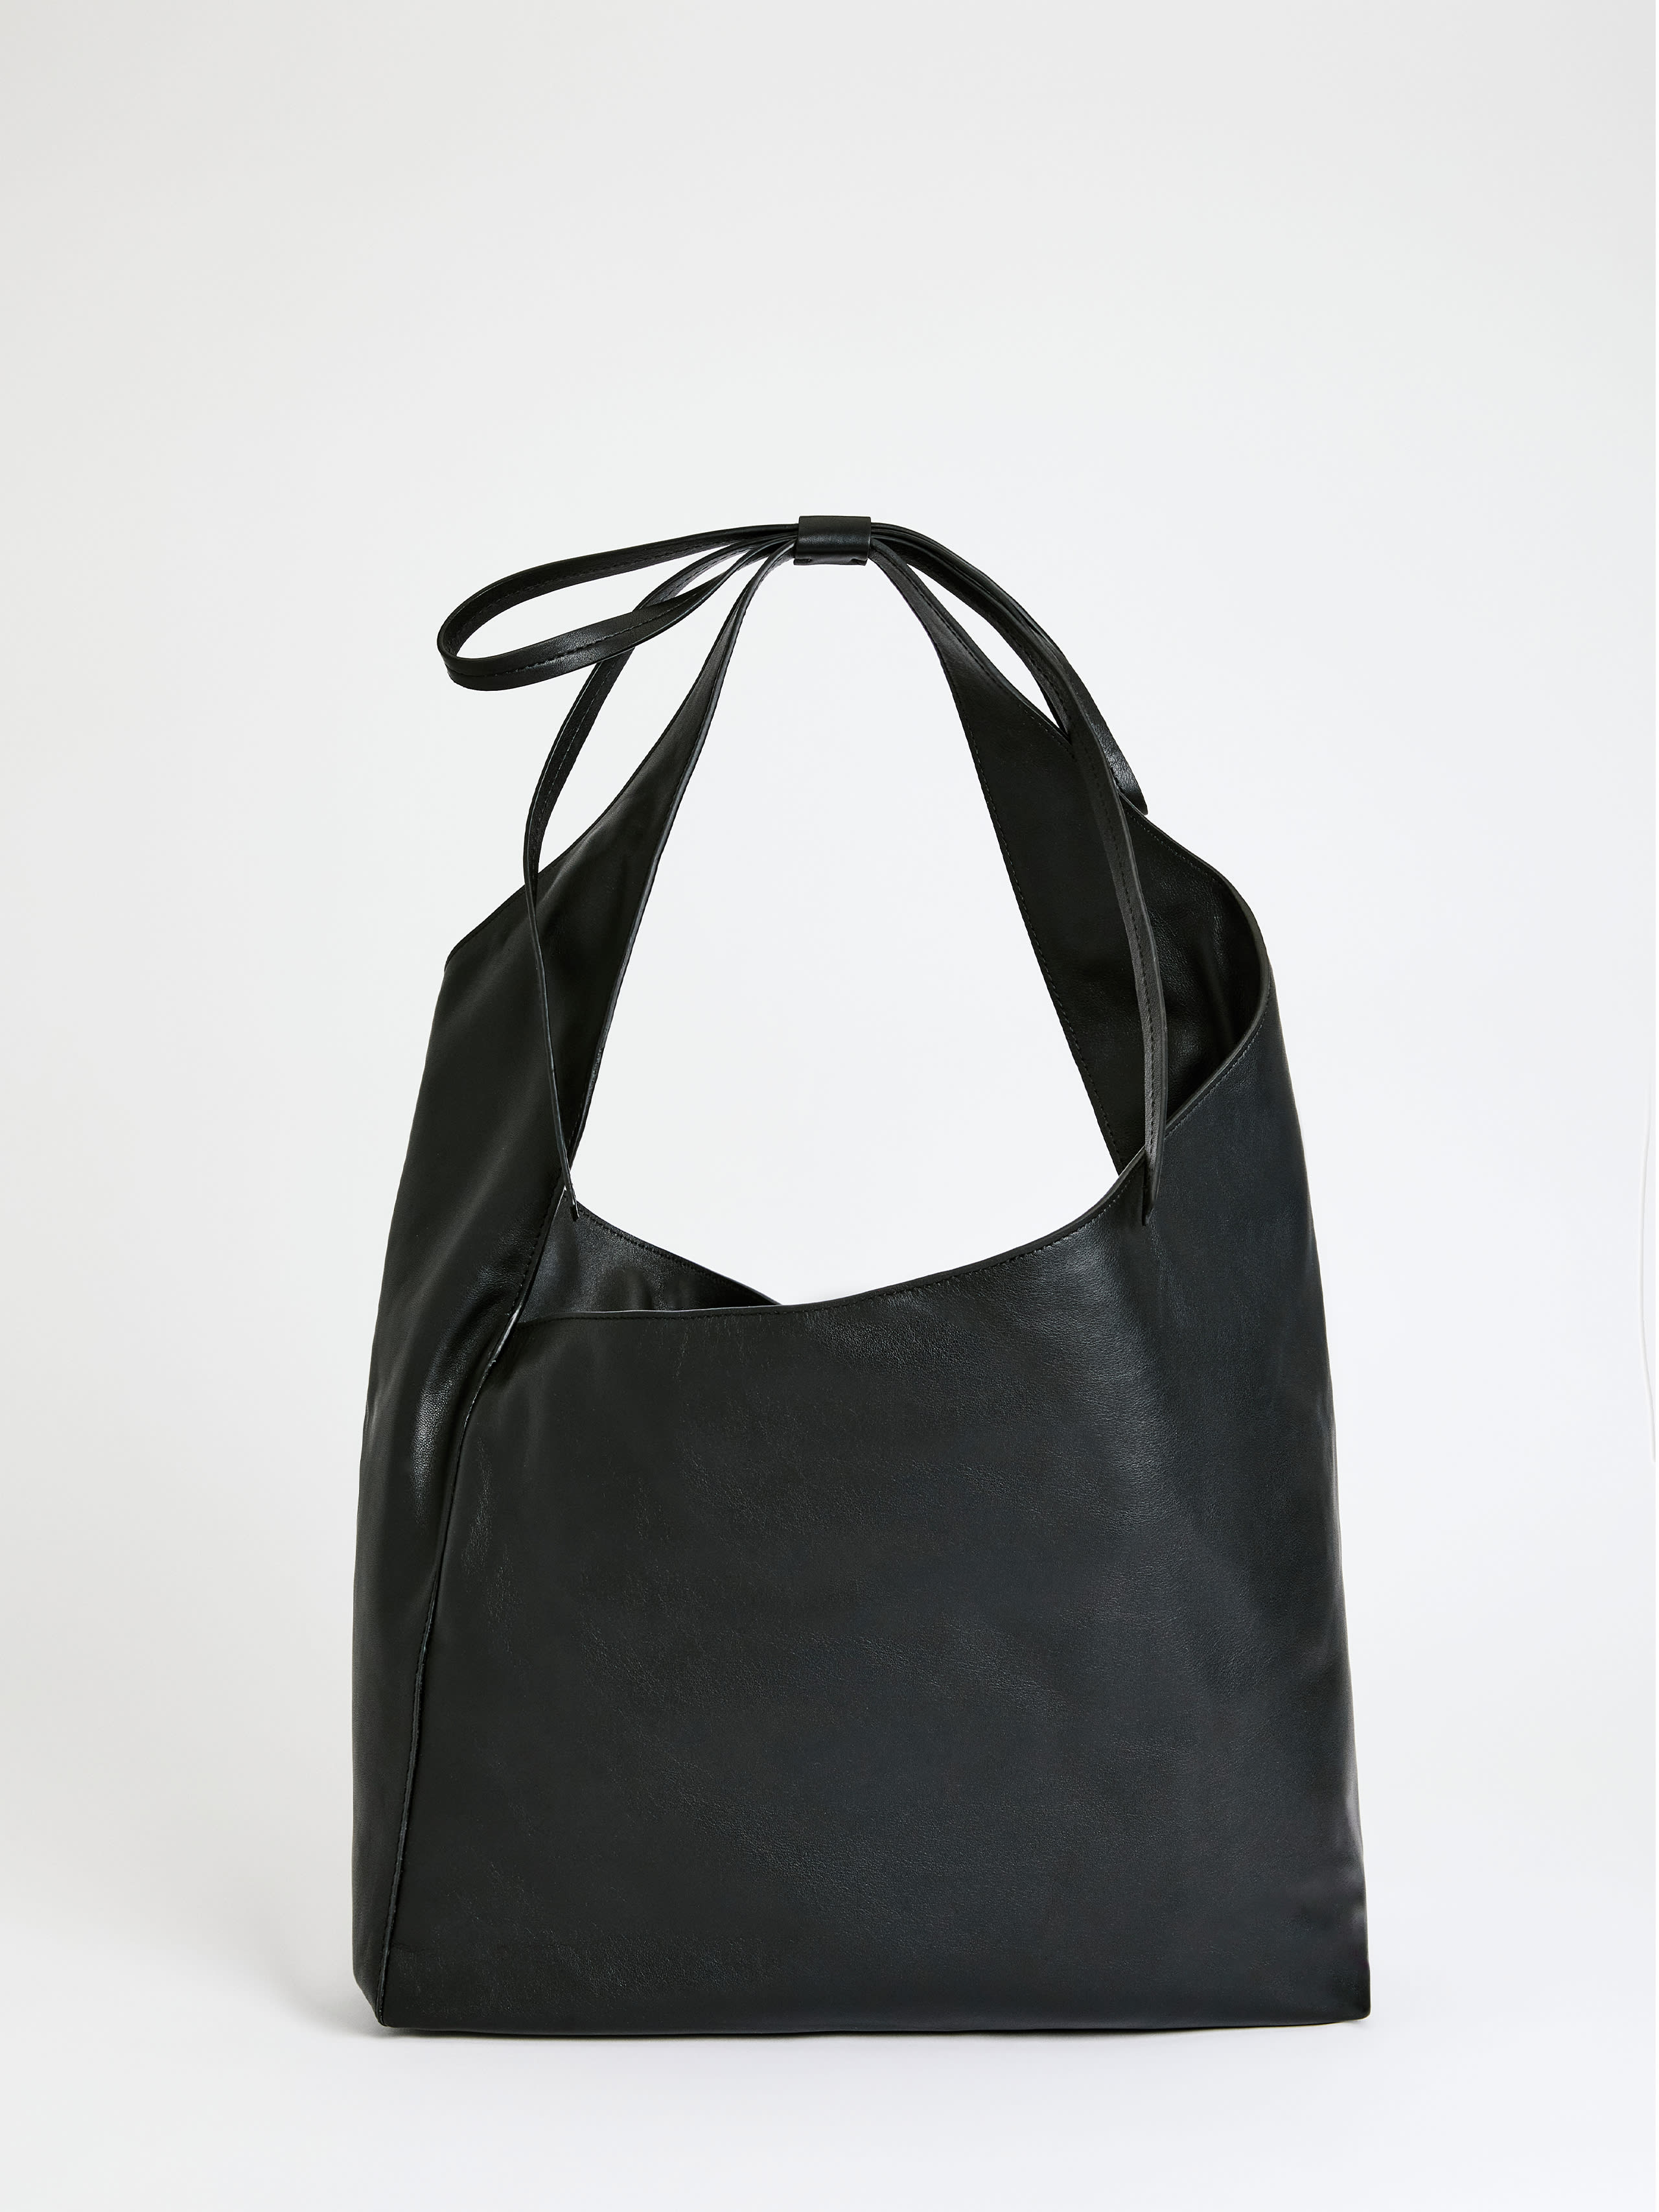 Reformation Medium Vittoria Tote Bag In Black Leather